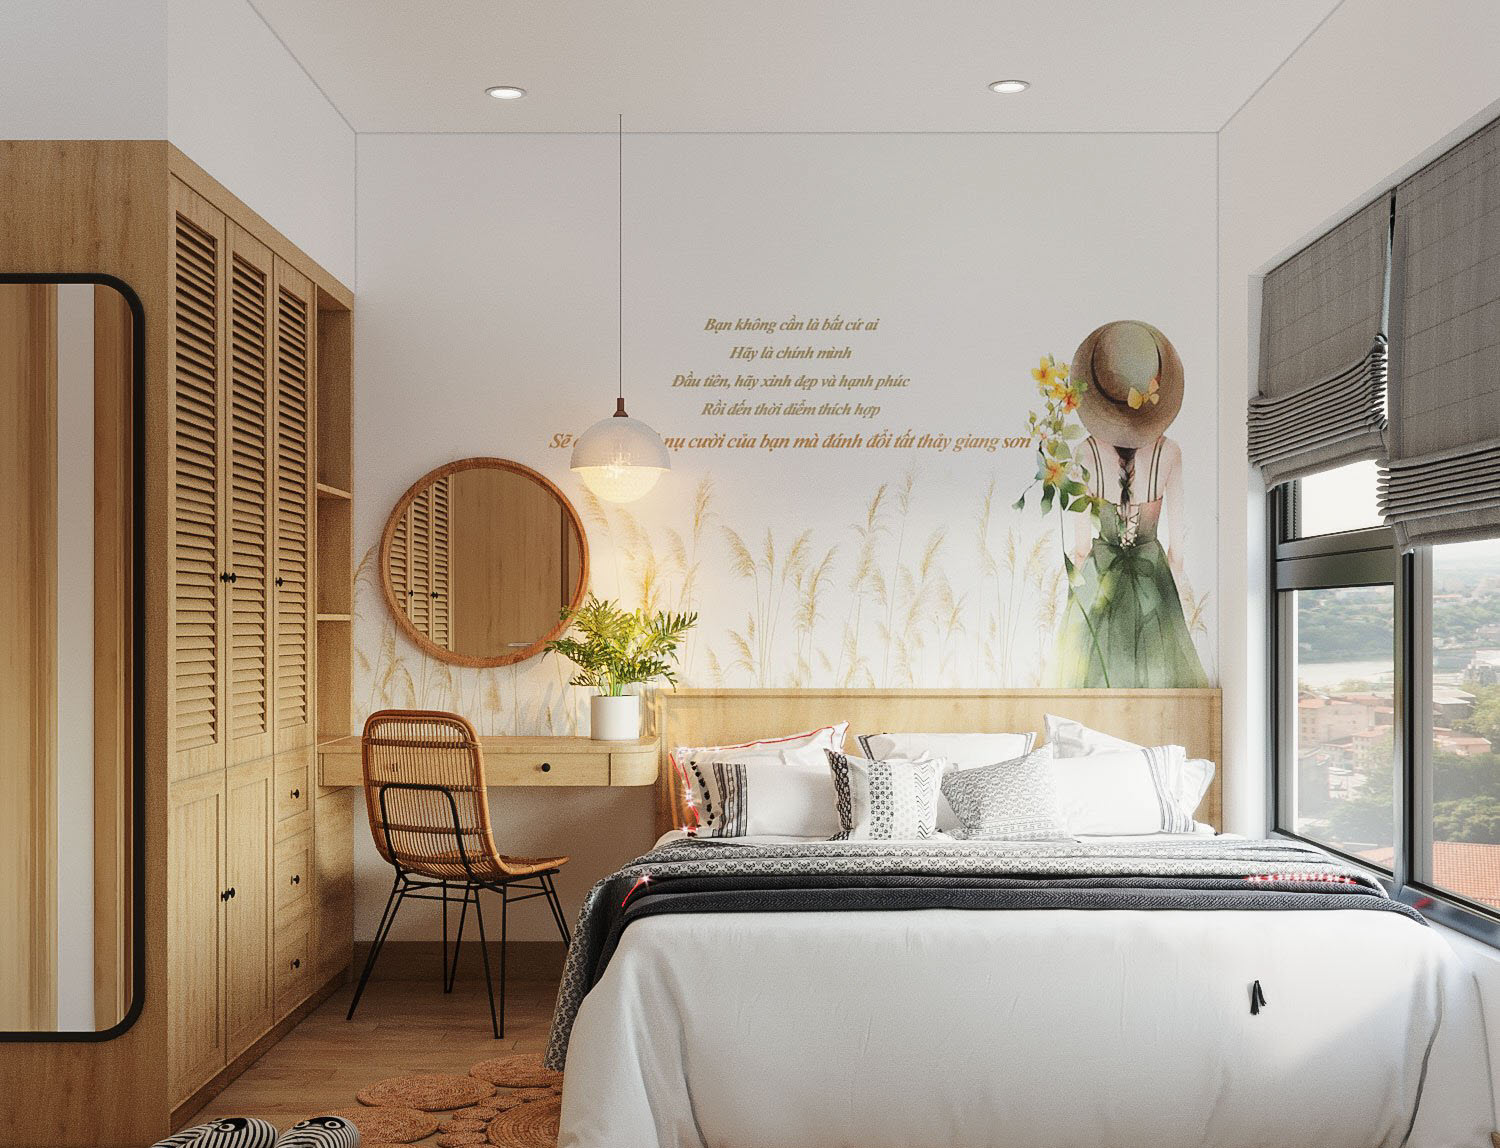 Phòng ngủ master được thiết kế theo phong cách hiện đại tối giản với hệ tủ gỗ tông màu thân thiện. Điểm nhấn làm nên thần thái nữ tính của căn phòng chính là tranh tường đầu giường.